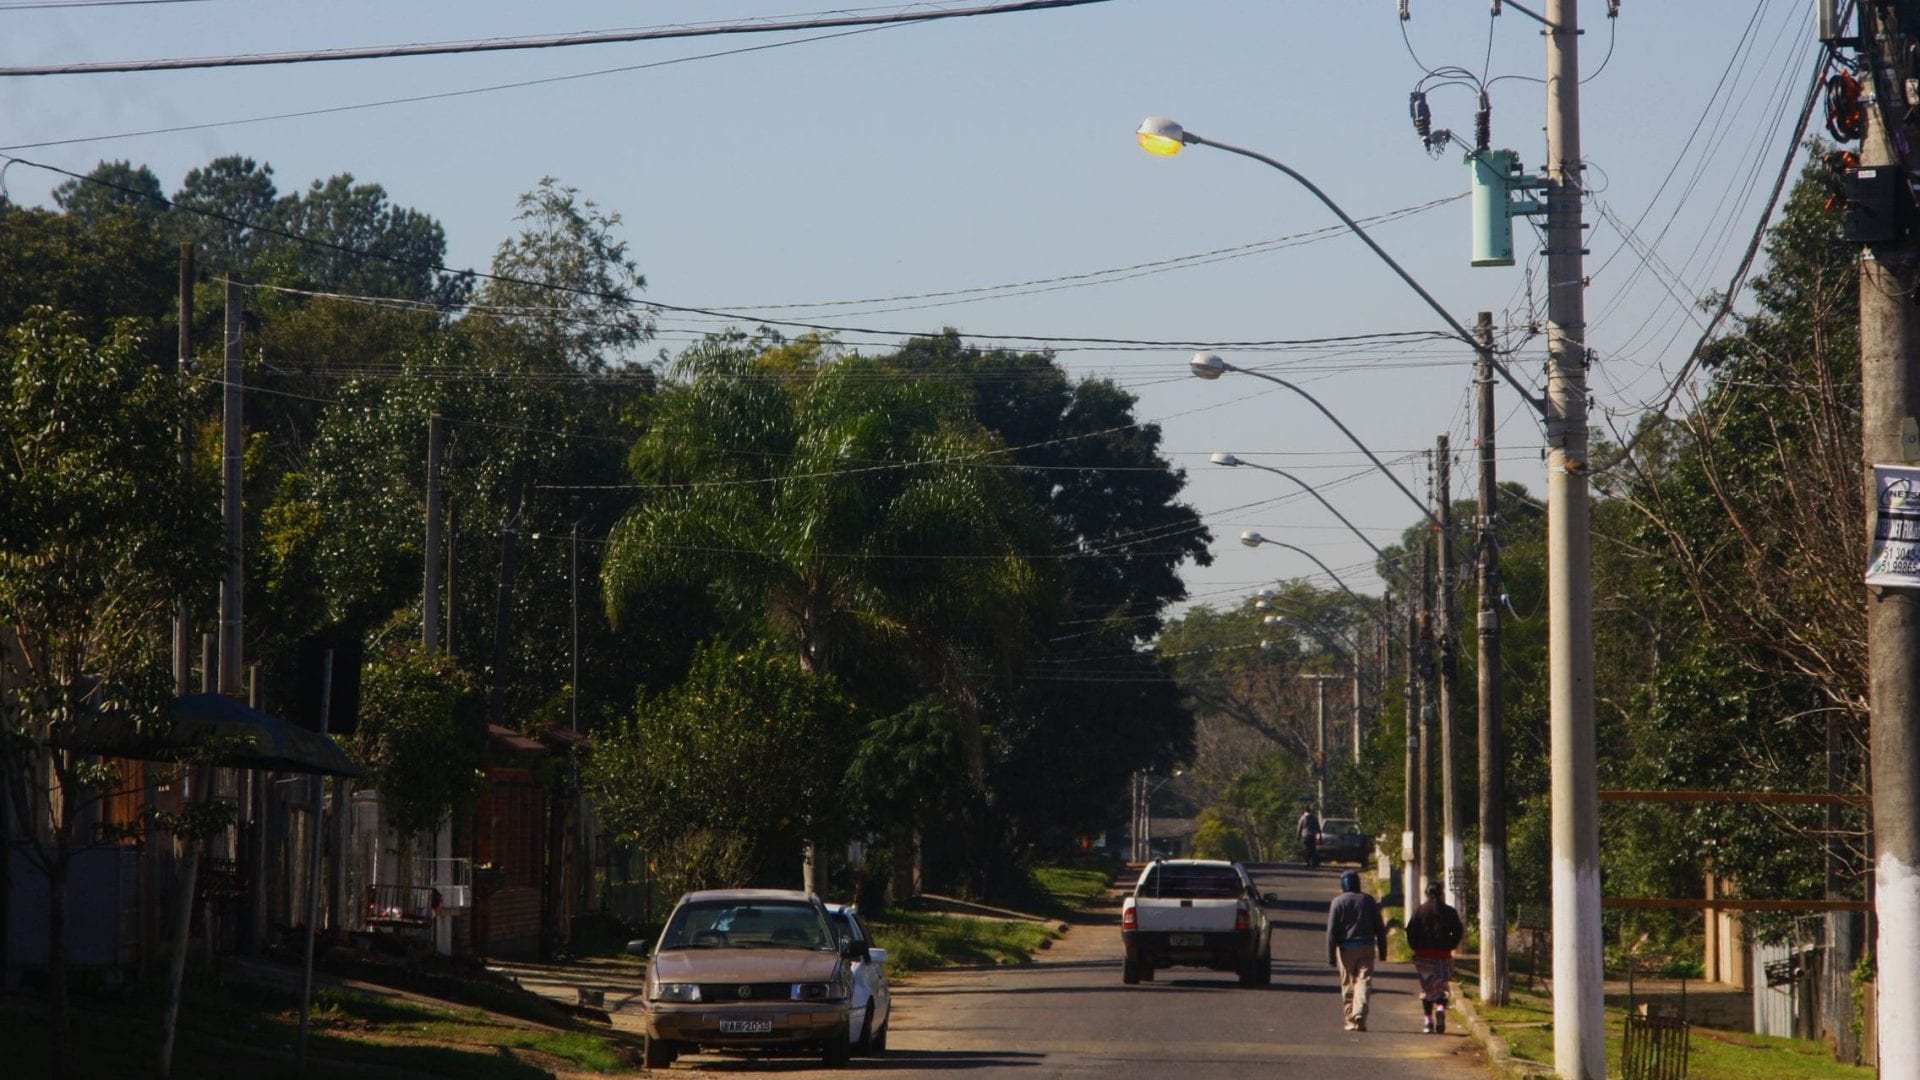 Moradores sofrem com as constantes quedas e falta de energia em bairro de Gravataí